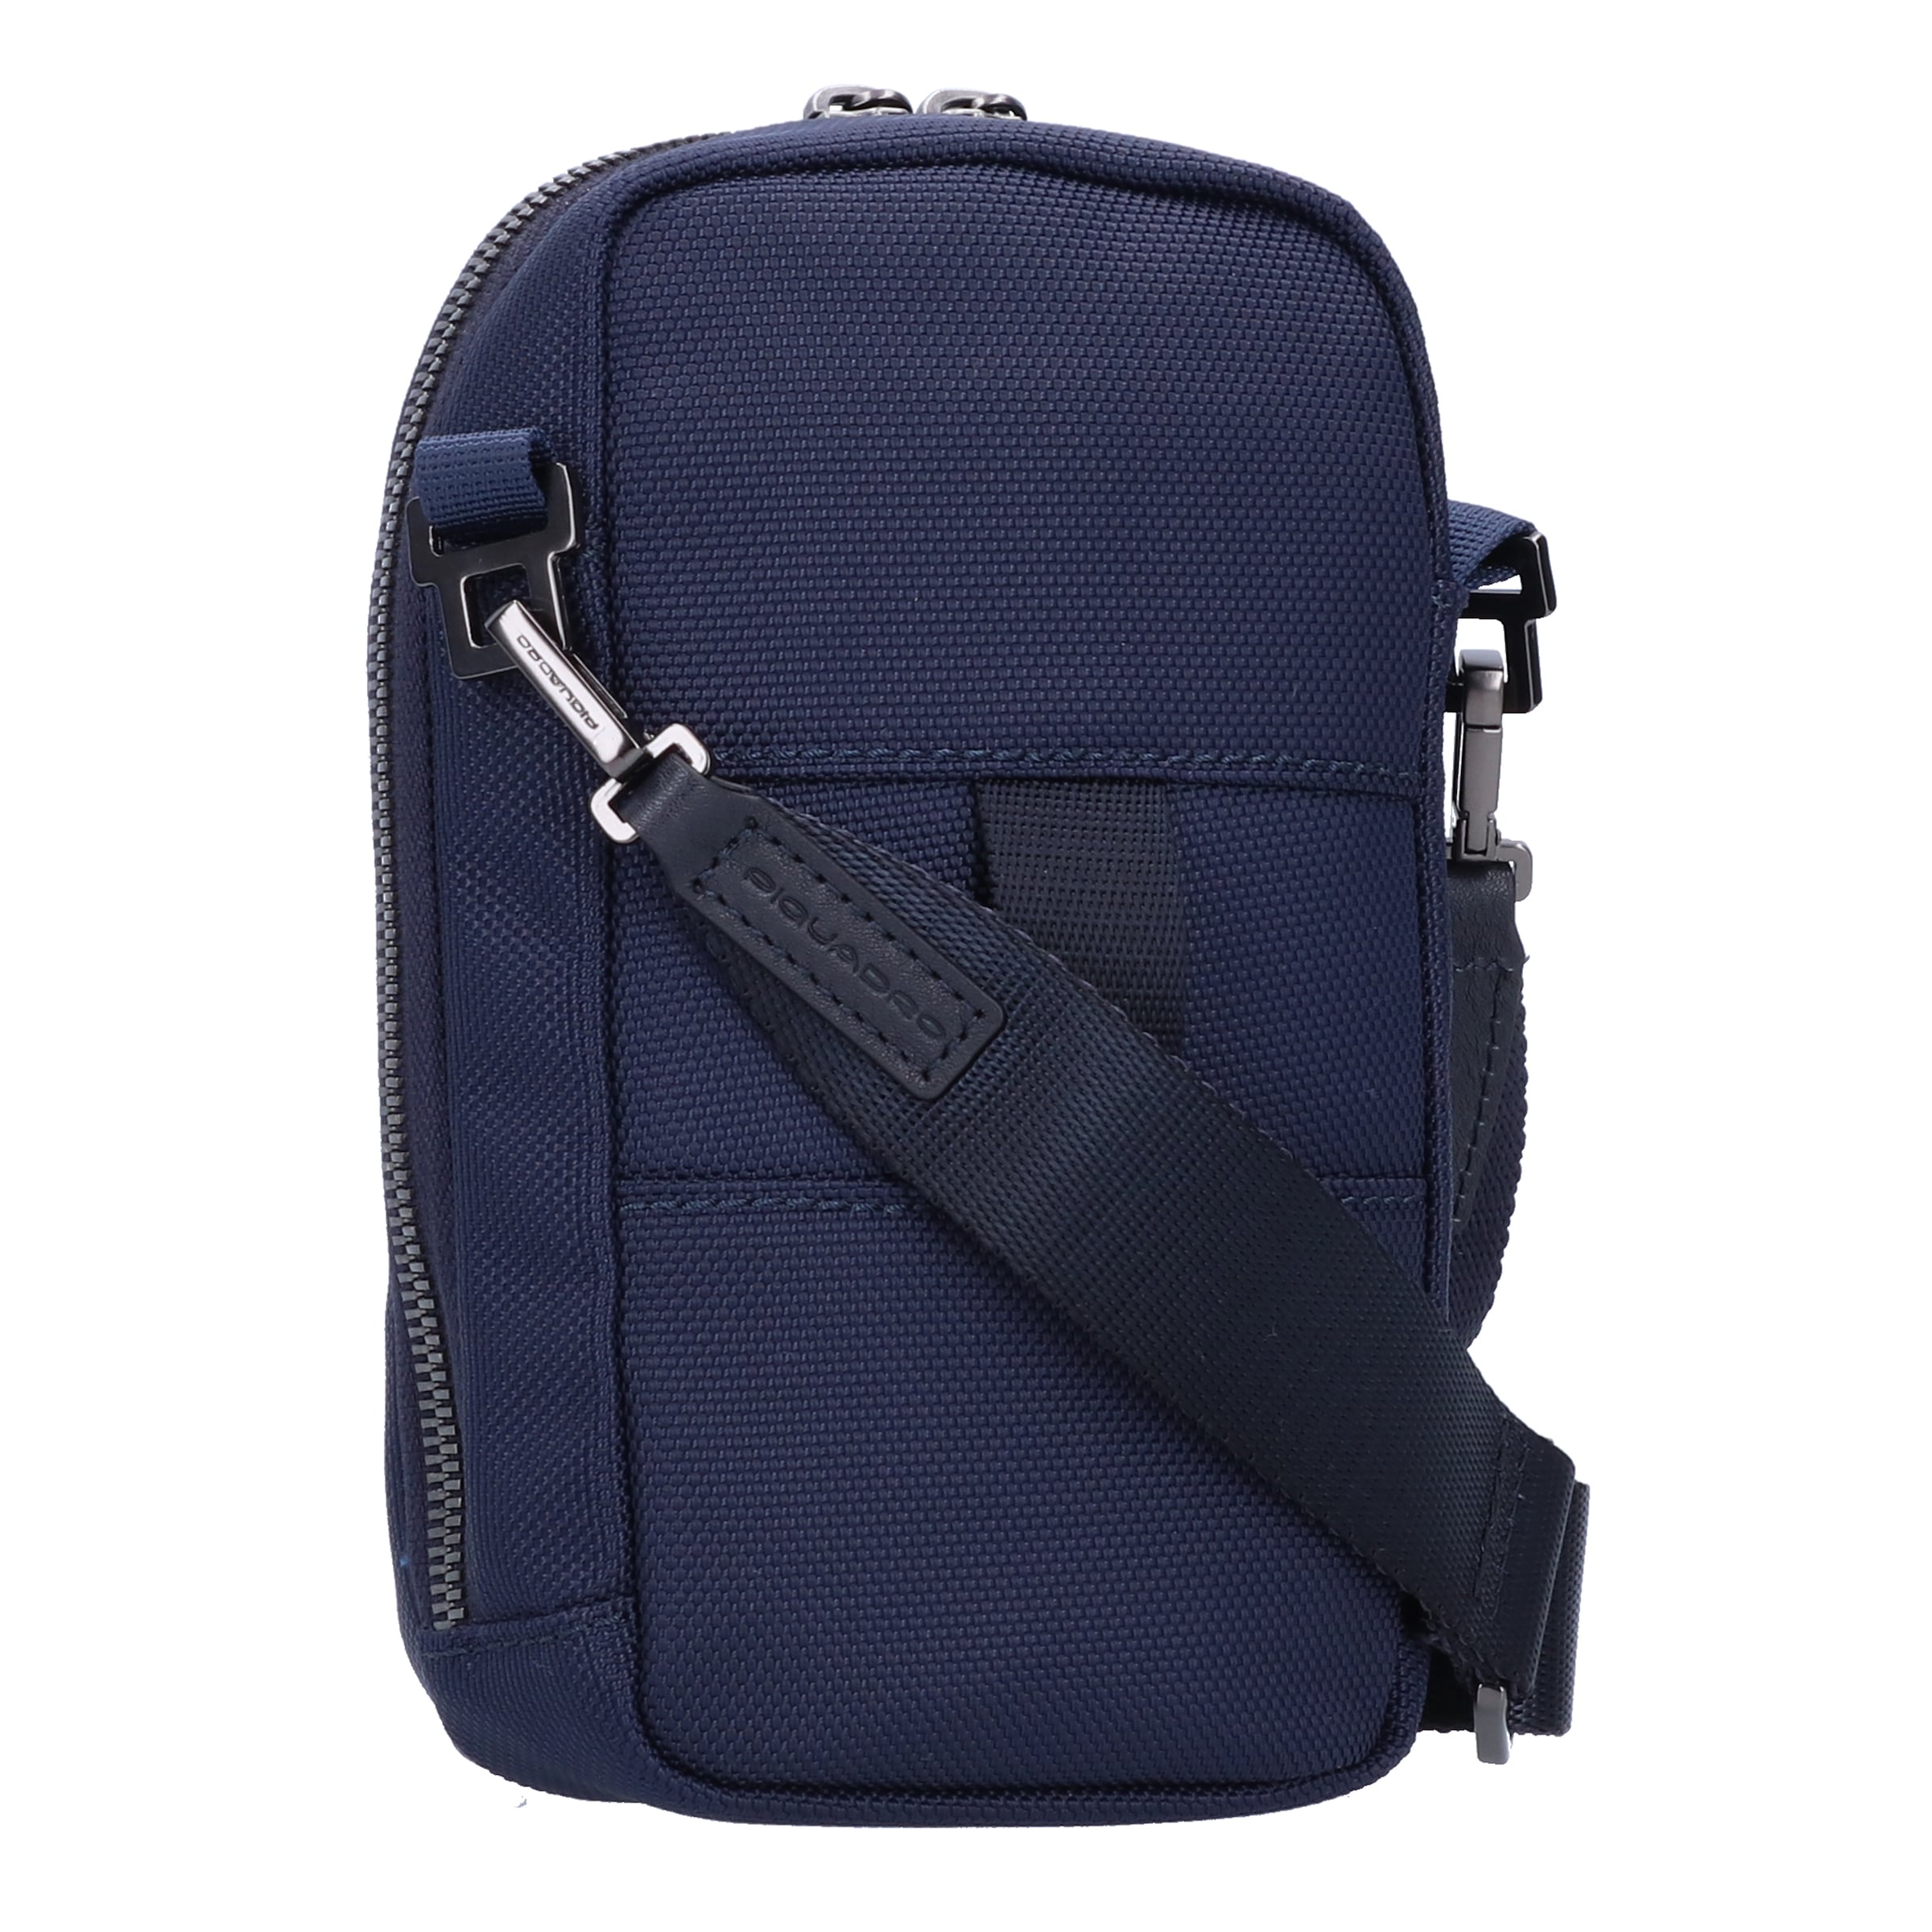 Männer Taschen & Rucksäcke Piquadro Umhängetasche in Blau - BG50065